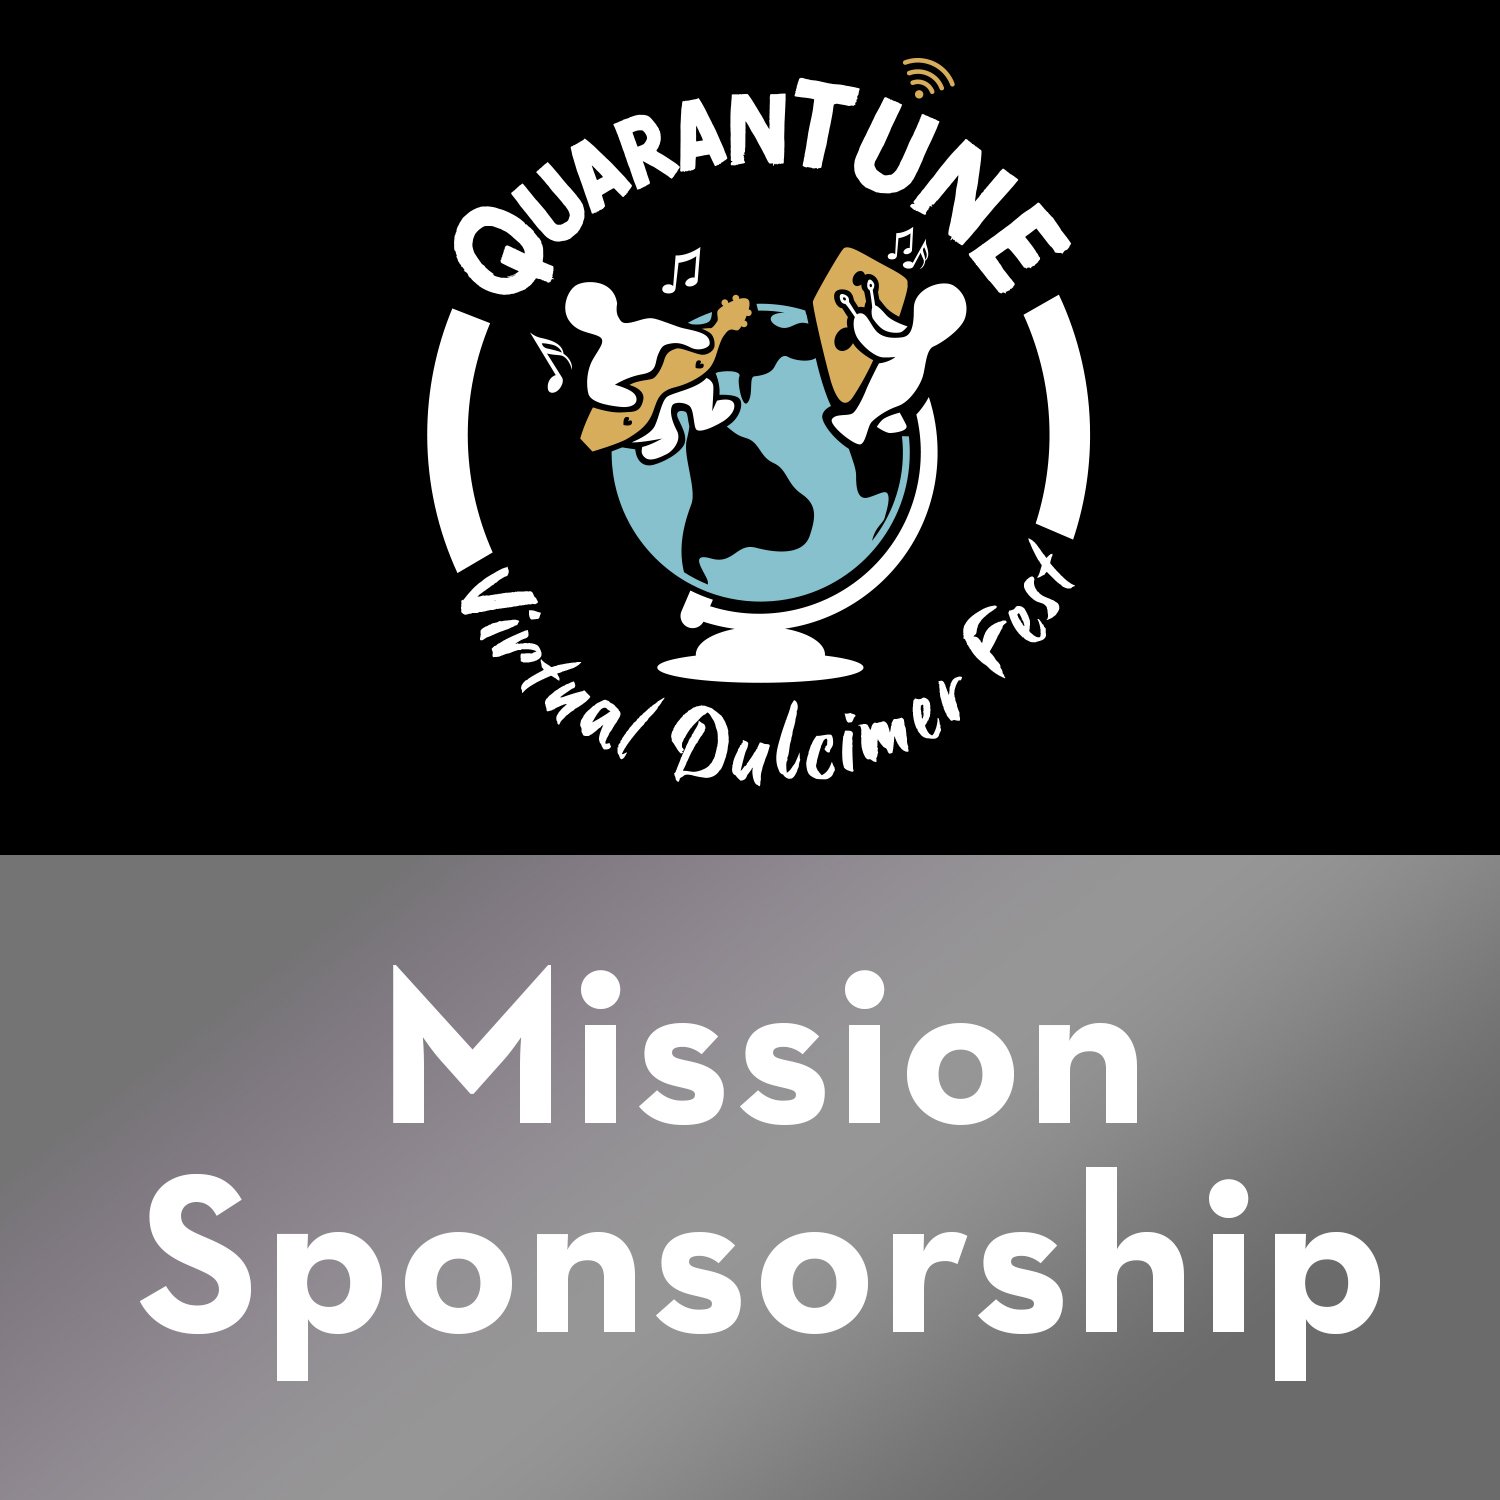 Hykler hjælpemotor sollys QDF 9.0: "Mission" Level Sponsorship — QuaranTune Virtual Dulcimer Fest